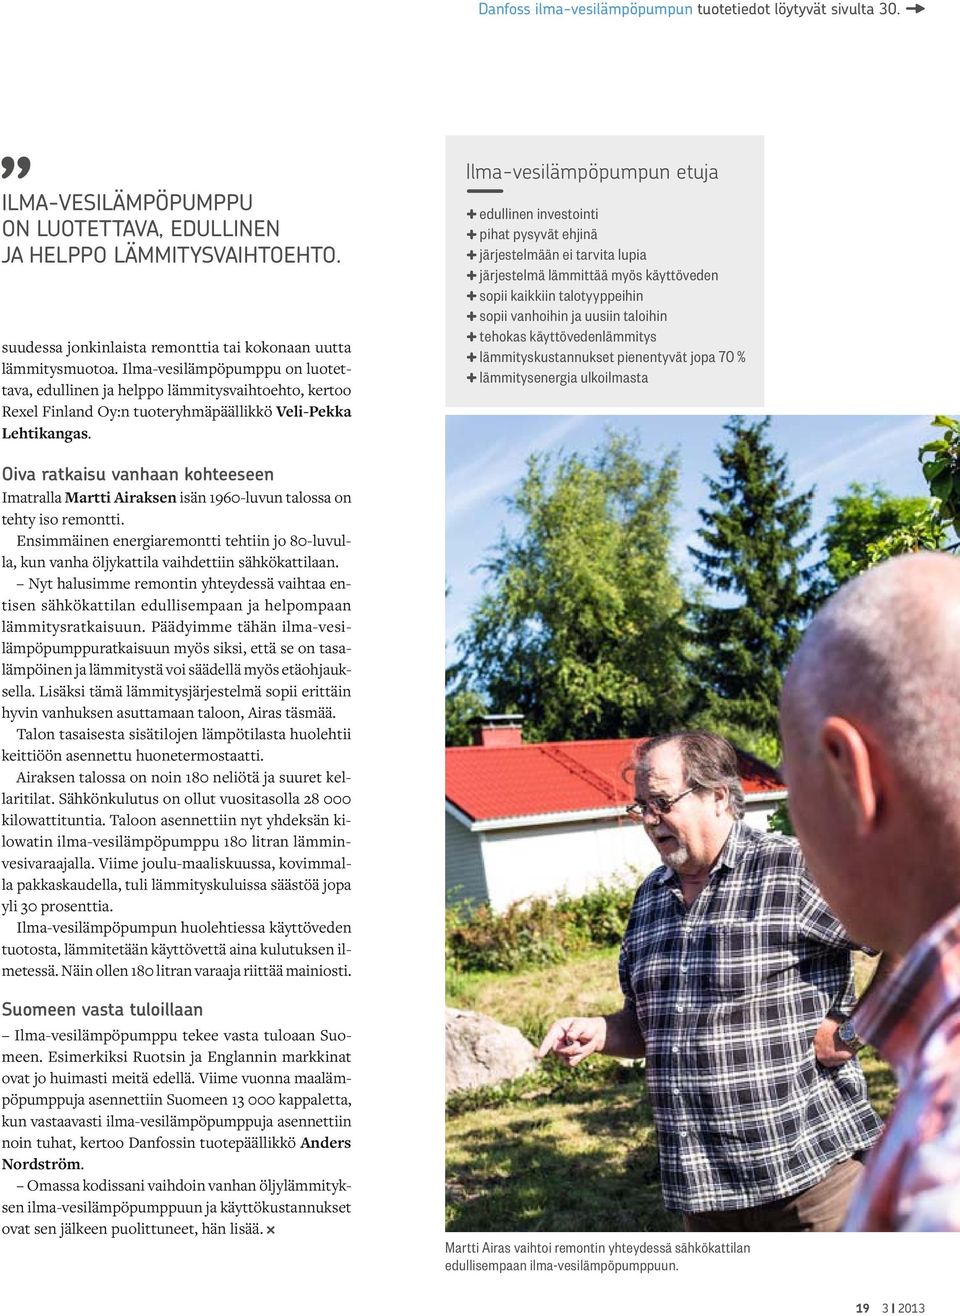 Ilma-vesilämpöpumppu on luotettava, edullinen ja helppo lämmitysvaihtoehto, kertoo Rexel Finland Oy:n tuoteryhmäpäällikkö Veli-Pekka Lehtikangas.